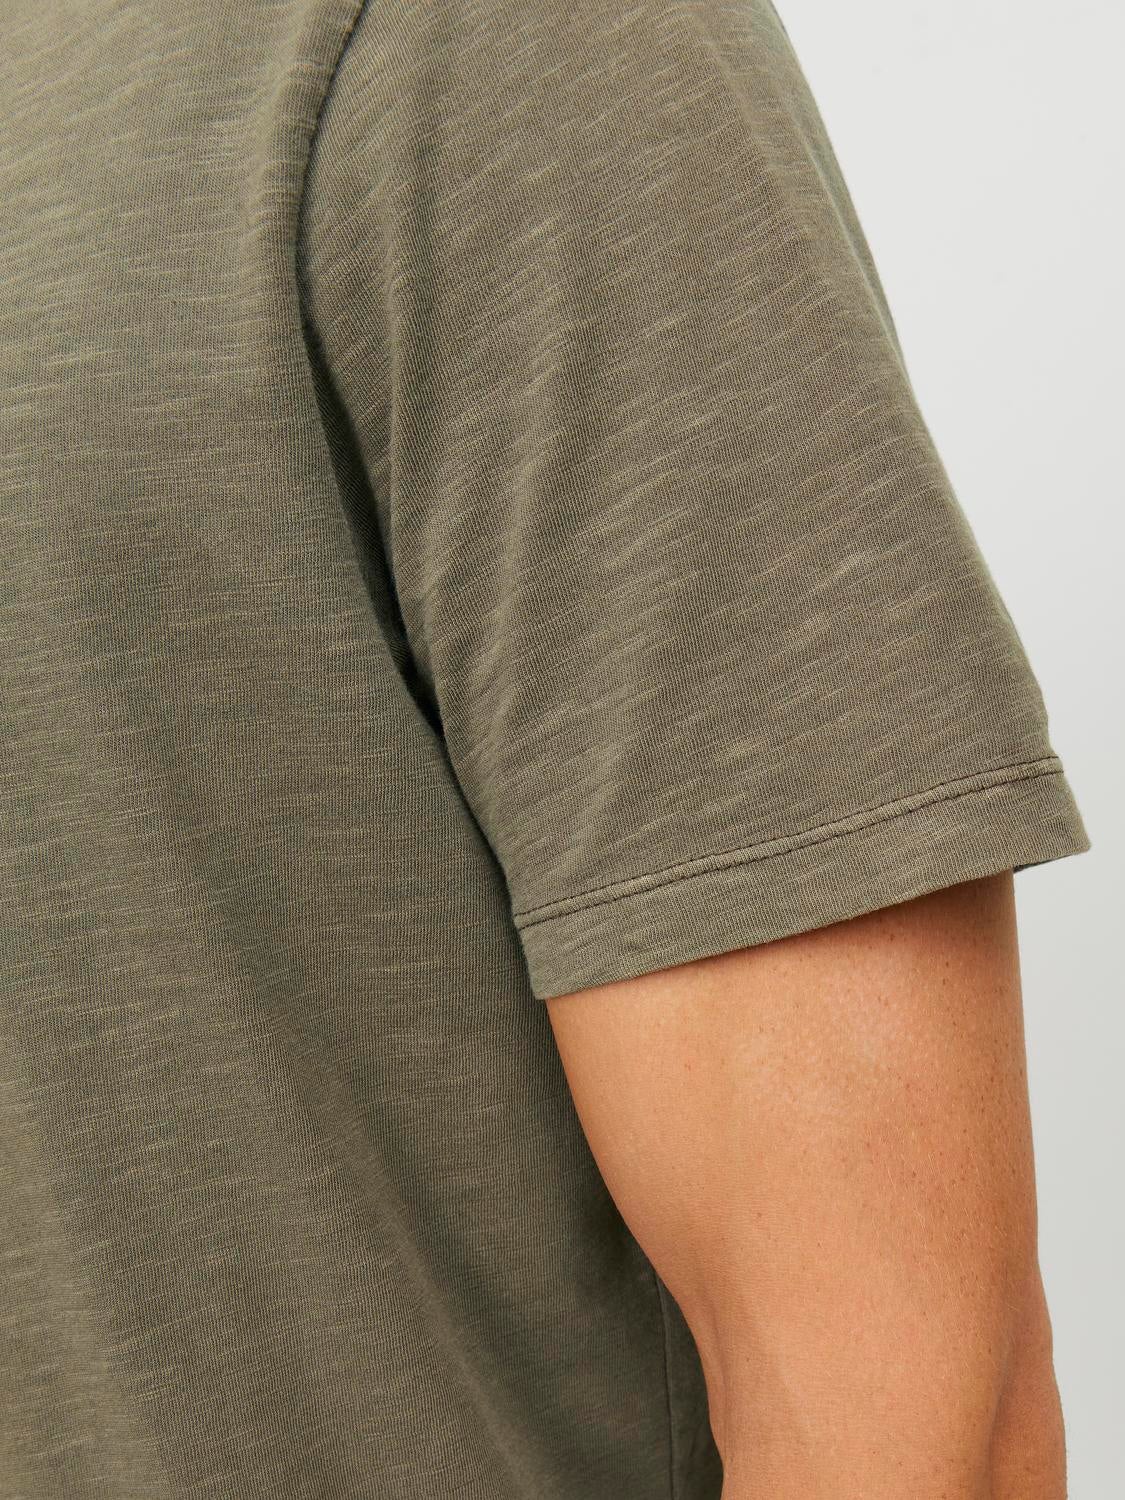 Melange Split Neck T-shirt, Medium Green